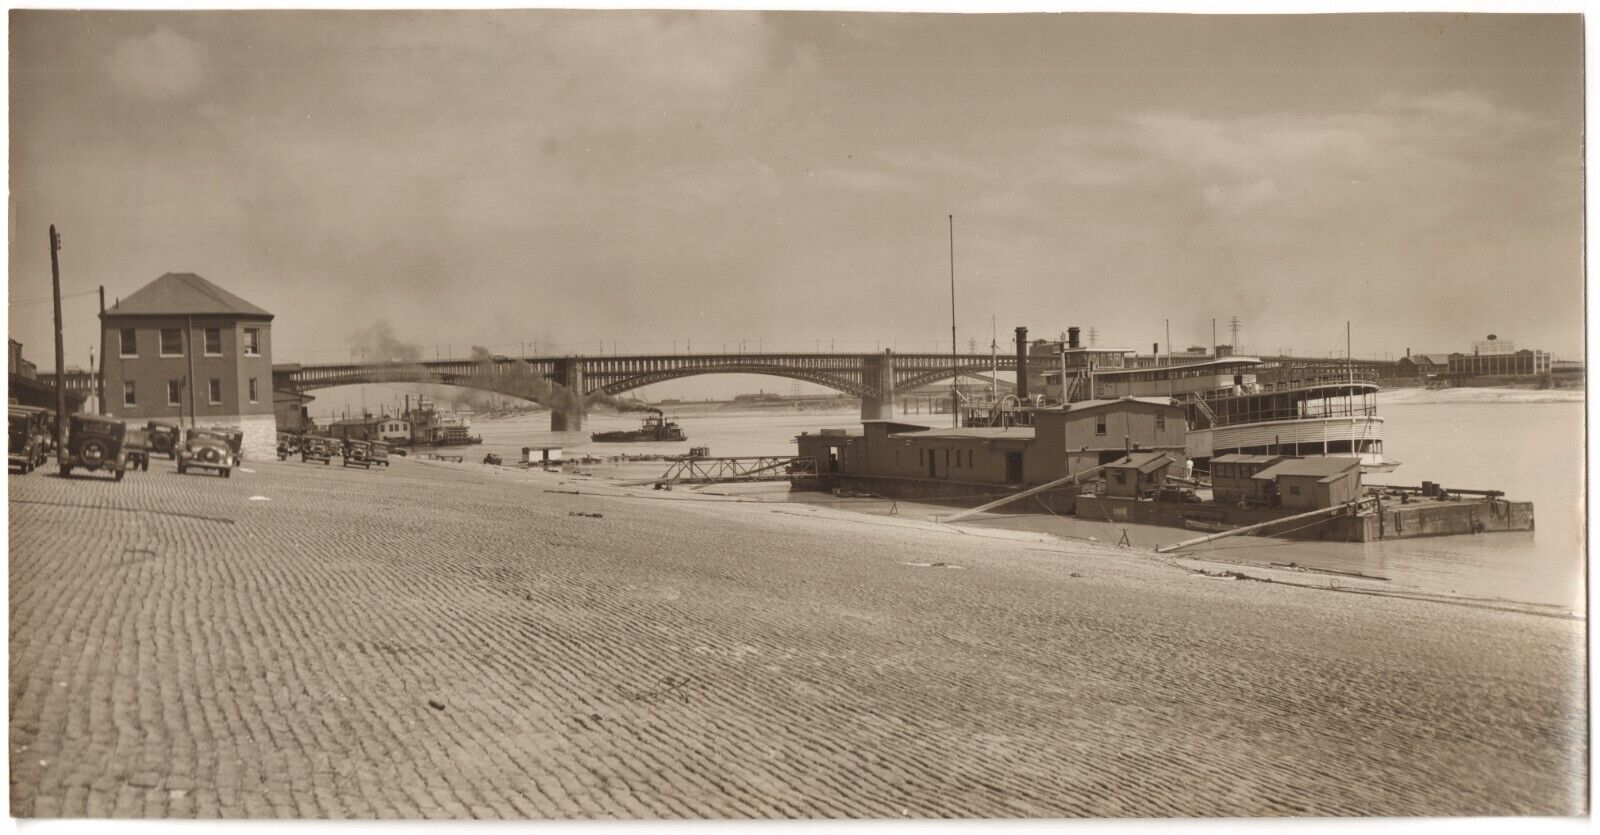 1925 OOAK TYPE-1 Photo: SS ST LOUIS Steamboat Steamer Docked by Eads Bridge